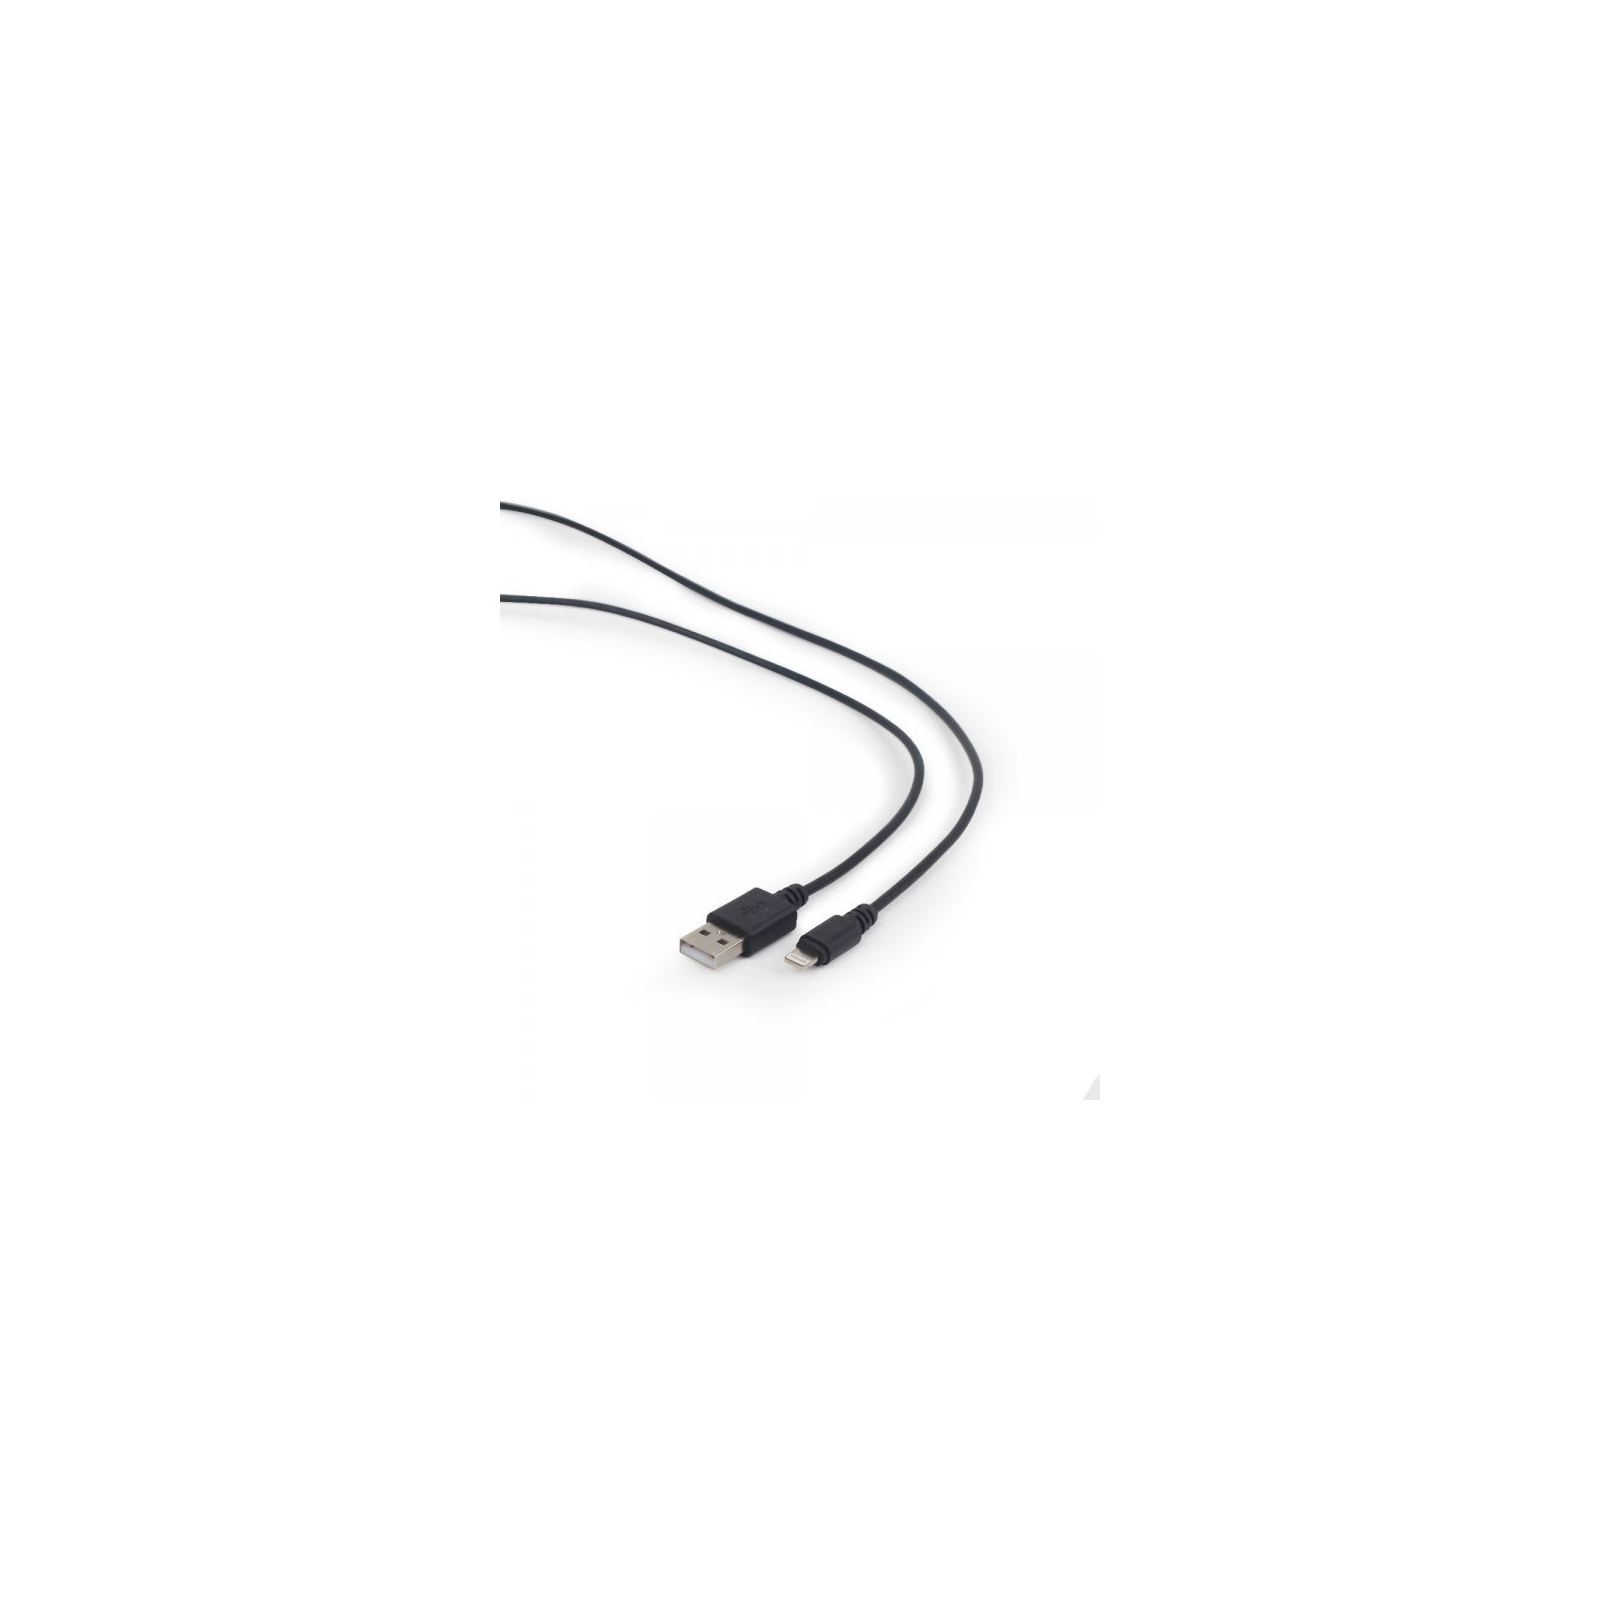 Дата кабель USB 2.0 AM to Lightning 1.0m Cablexpert (CC-USB2-AMLM-1M) зображення 2